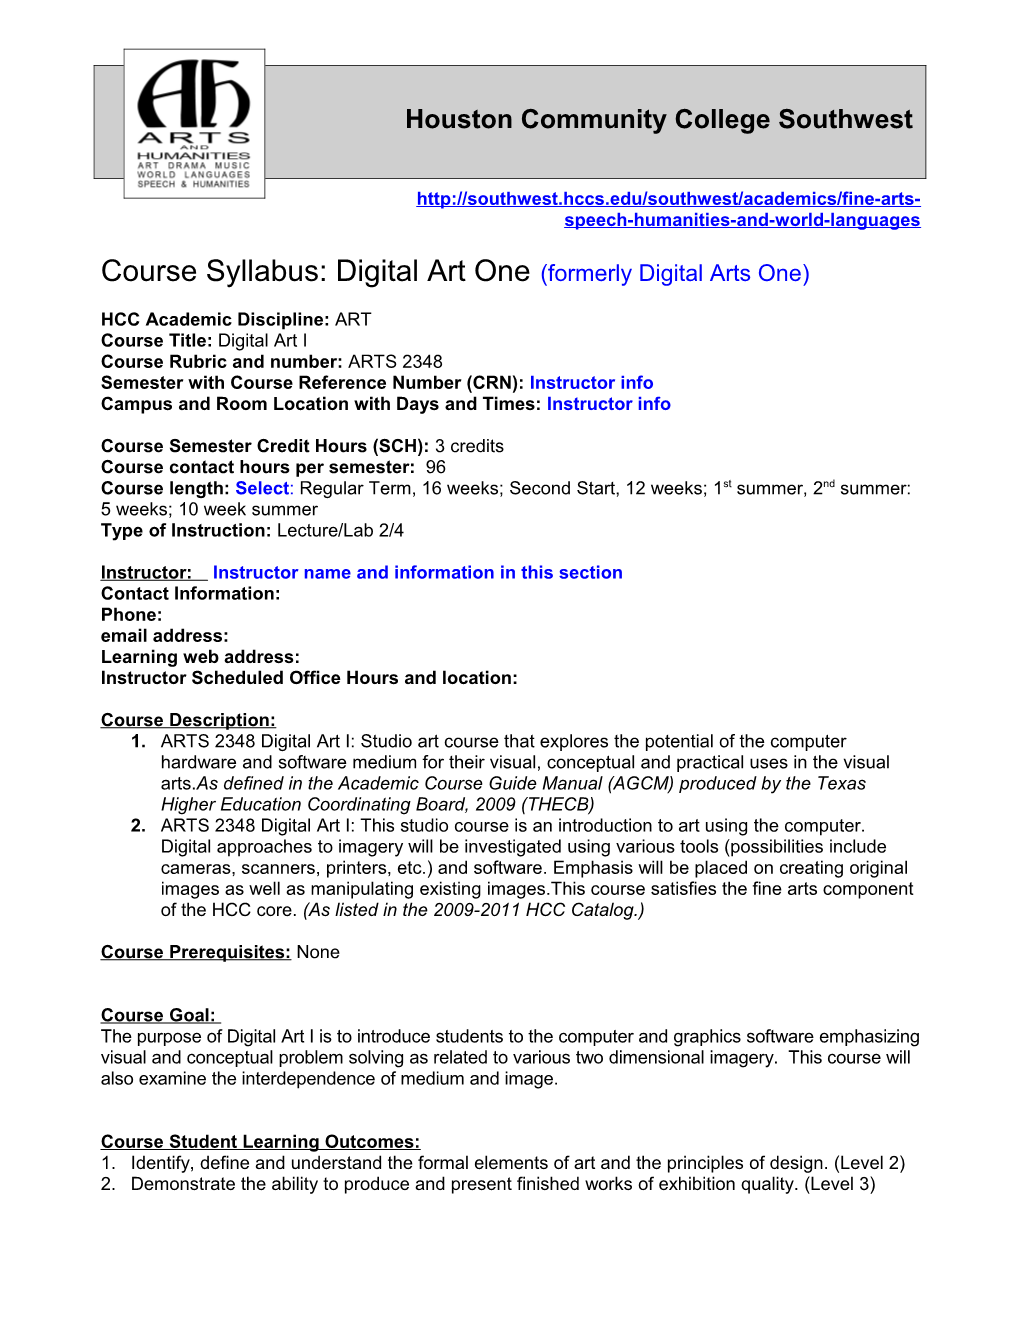 Course Syllabus: Digital Art One(Formerly Digital Arts One)